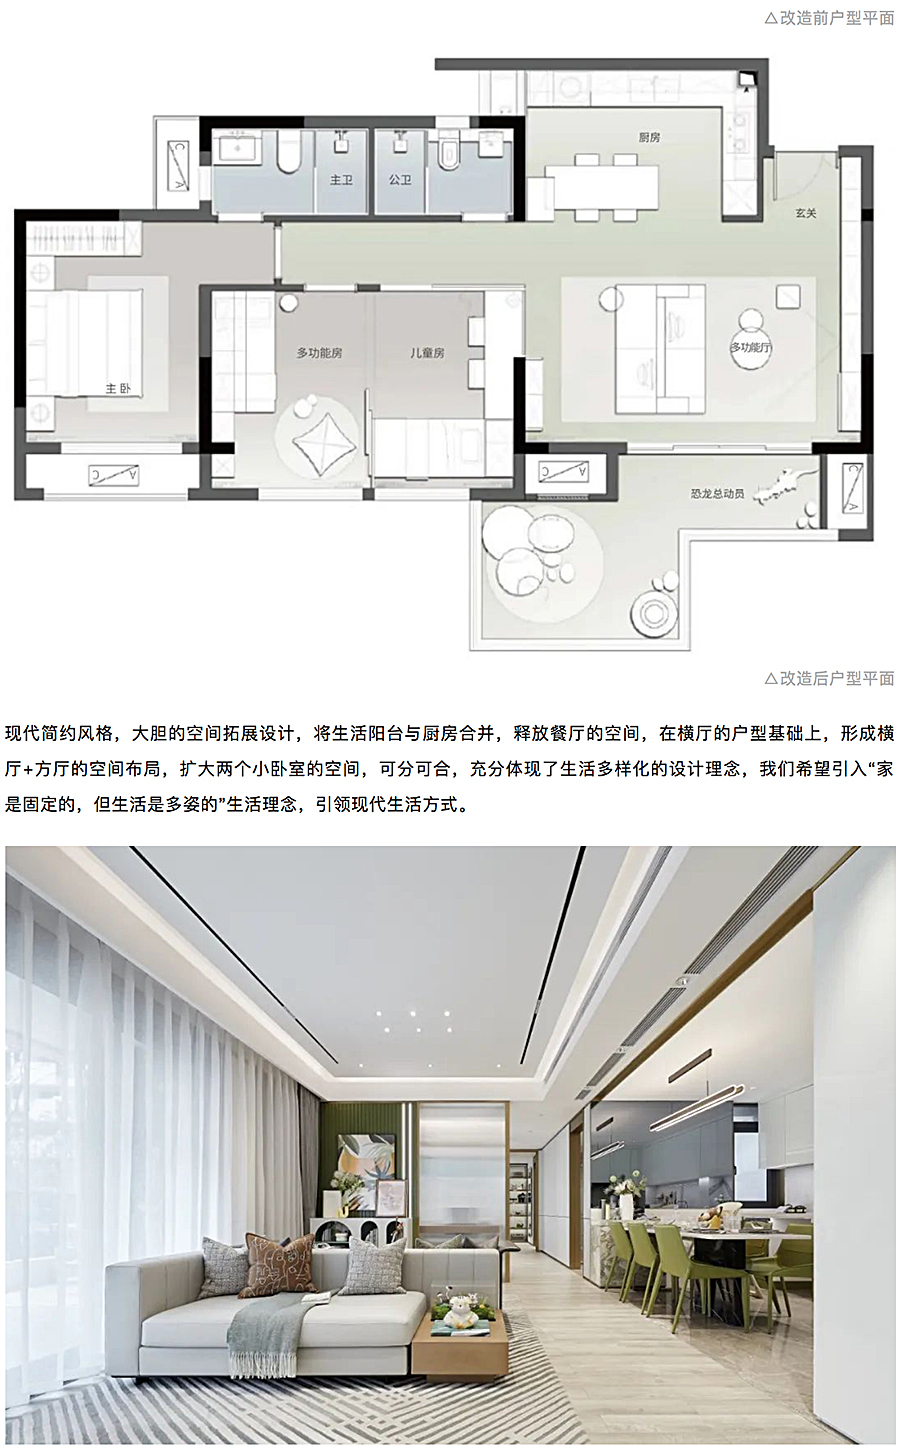 创新洋房社区-引领当代生活-_-重庆东原·月印万川_0020_图层-21.jpg